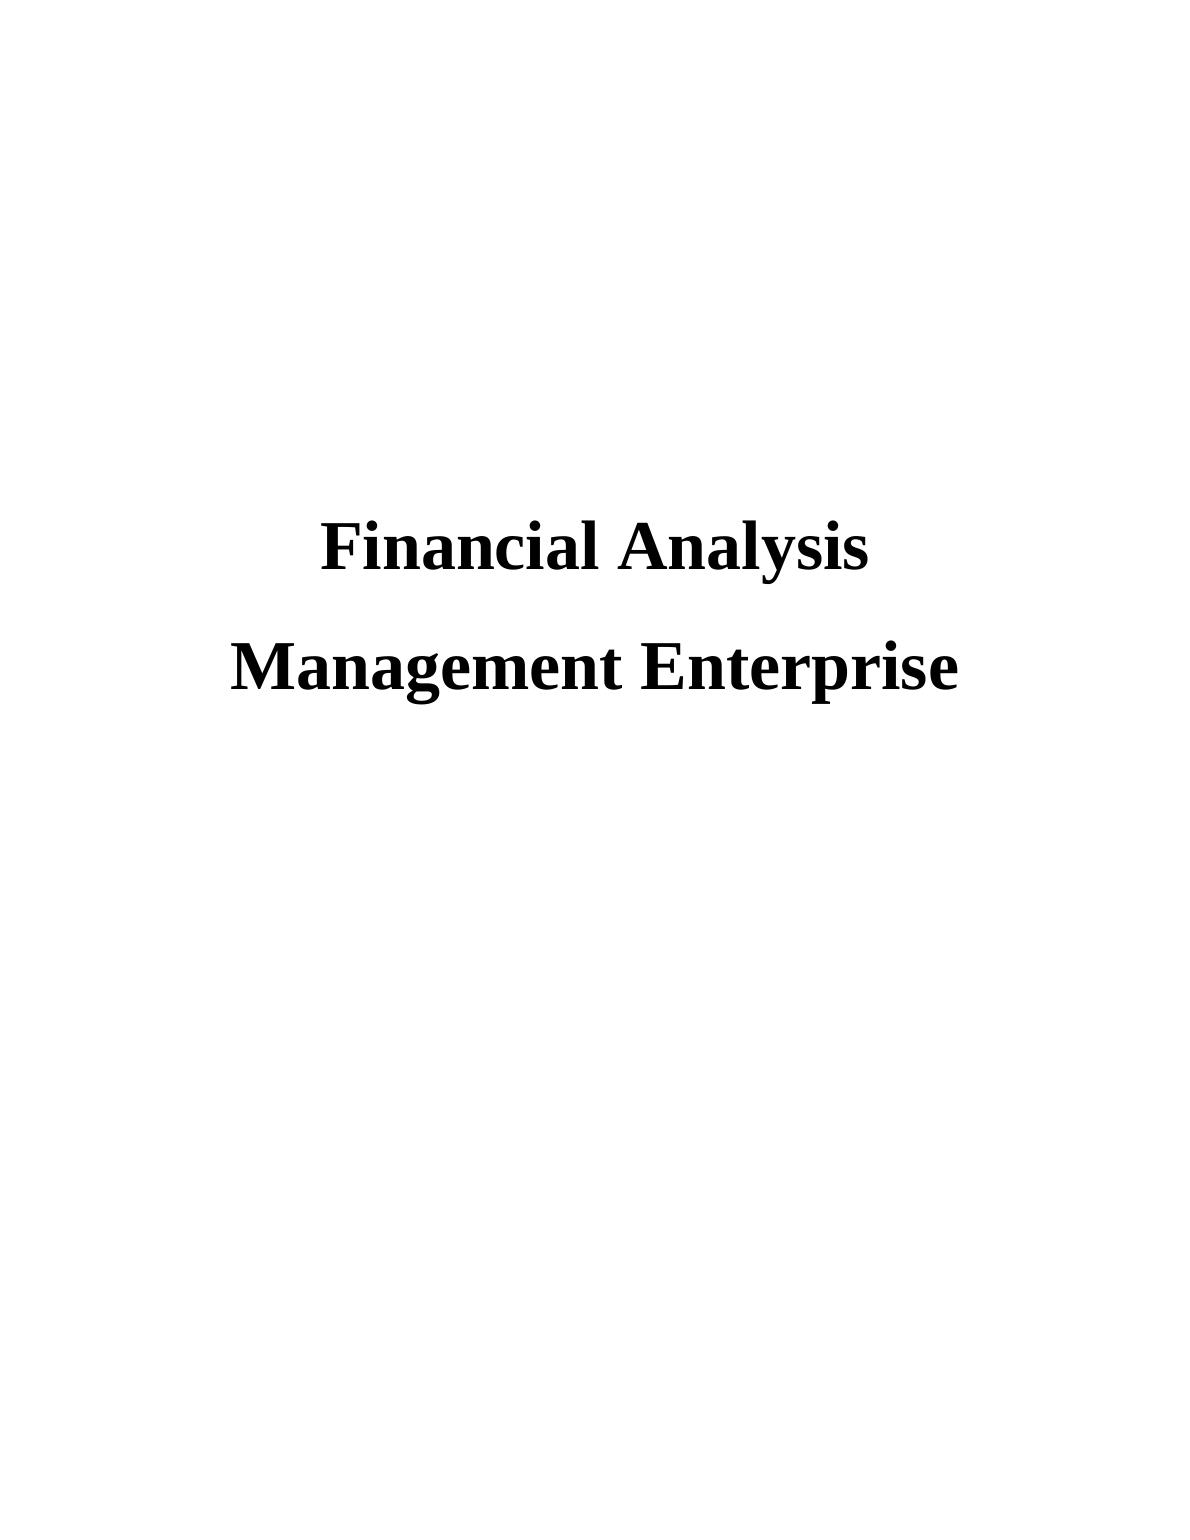 Financial Analysis for Simonds Farson Cisk and Heineken N.V._1